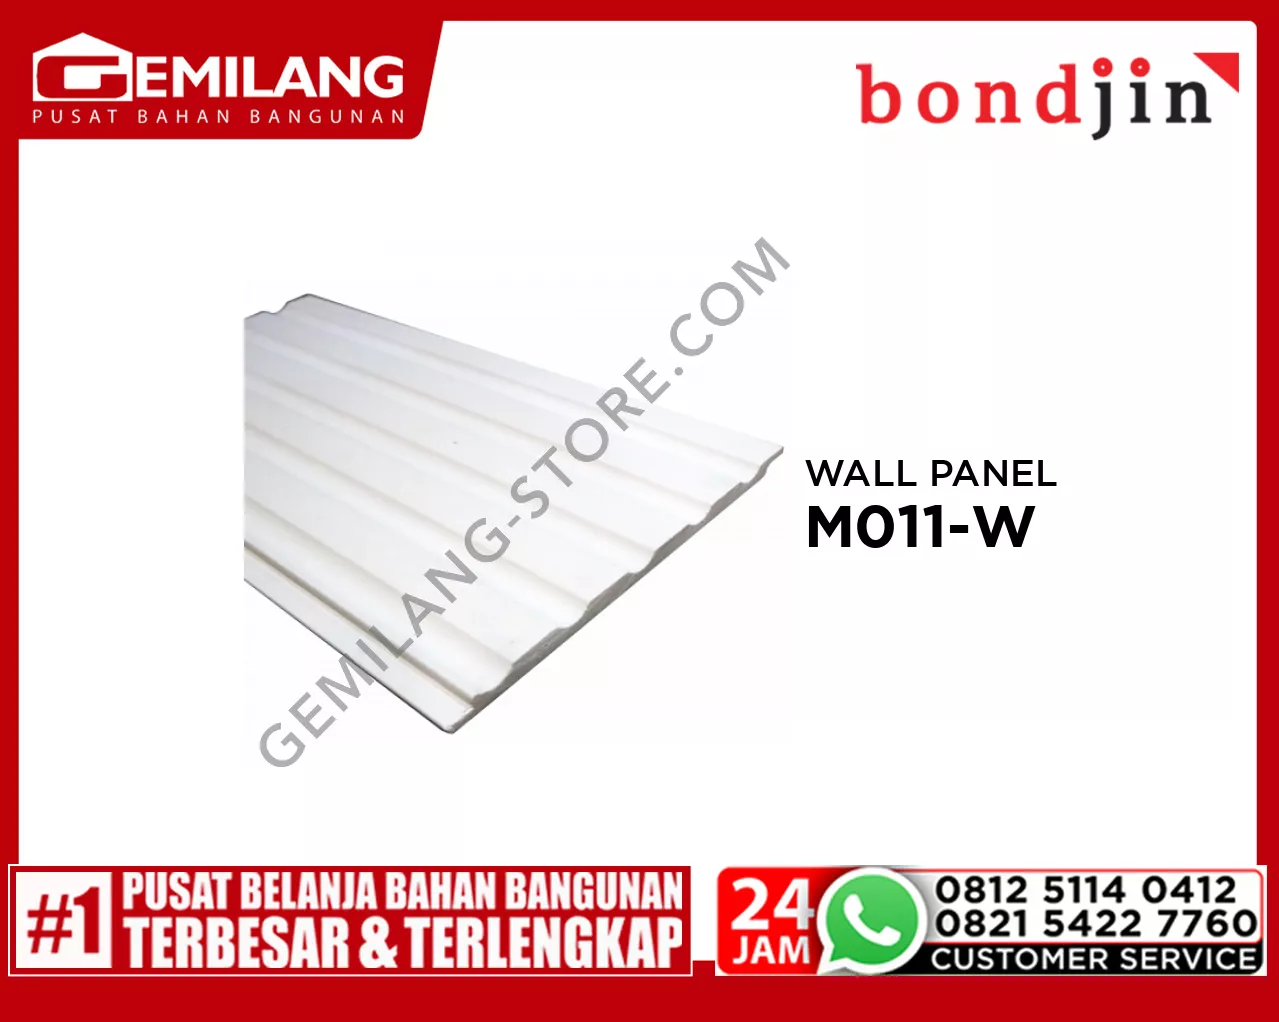 BONDJIN WALL PANEL M011-W (150 x 2400 x 6T)